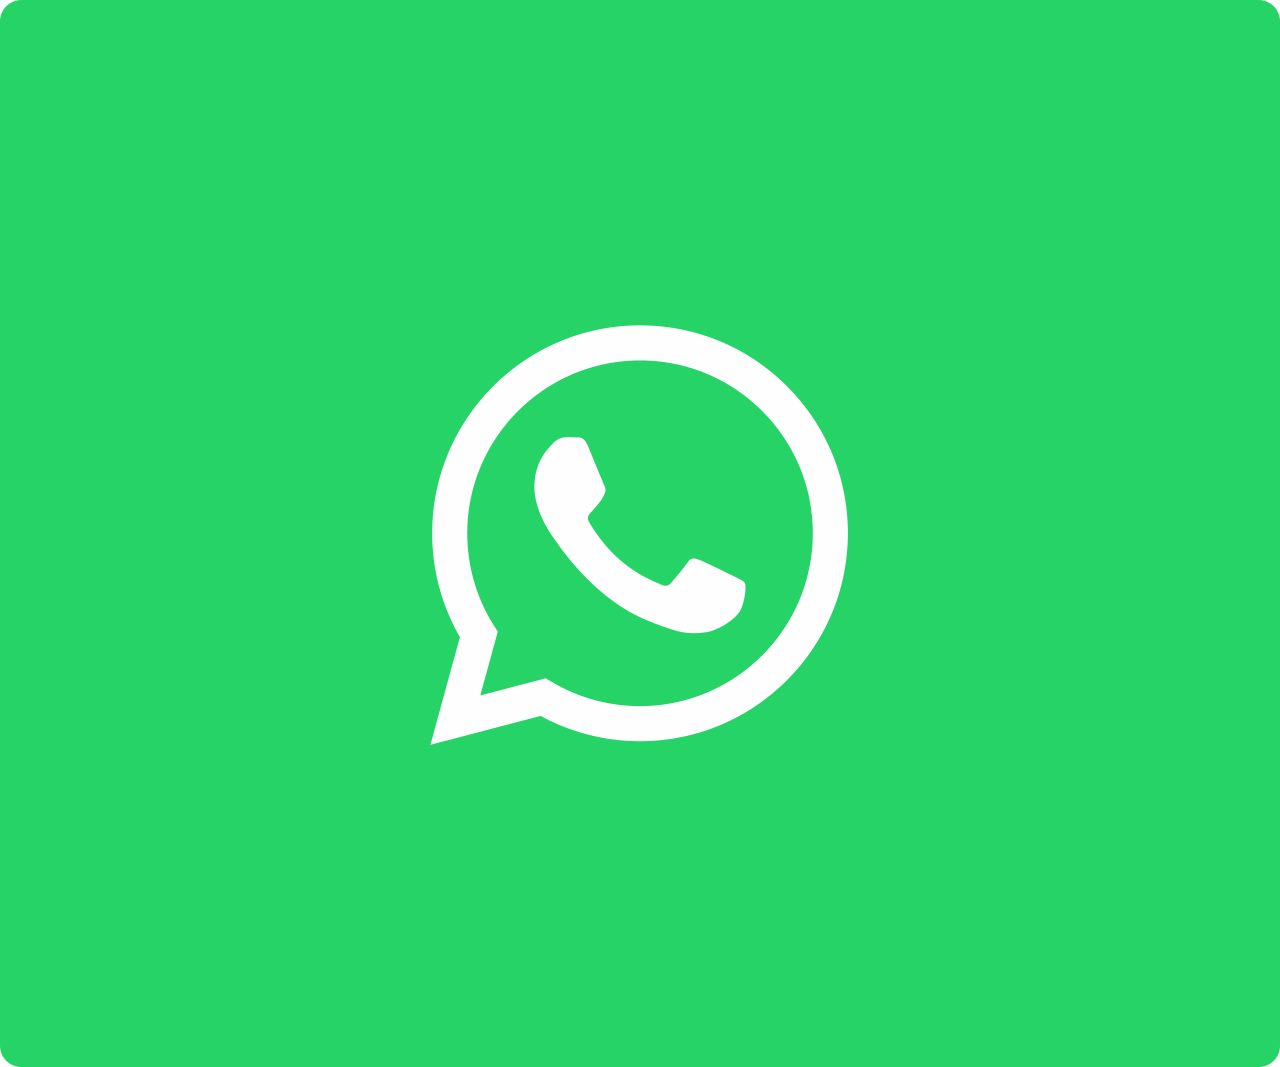 “Tu número de teléfono está suspendido”: el nuevo mensaje que envía WhatsApp